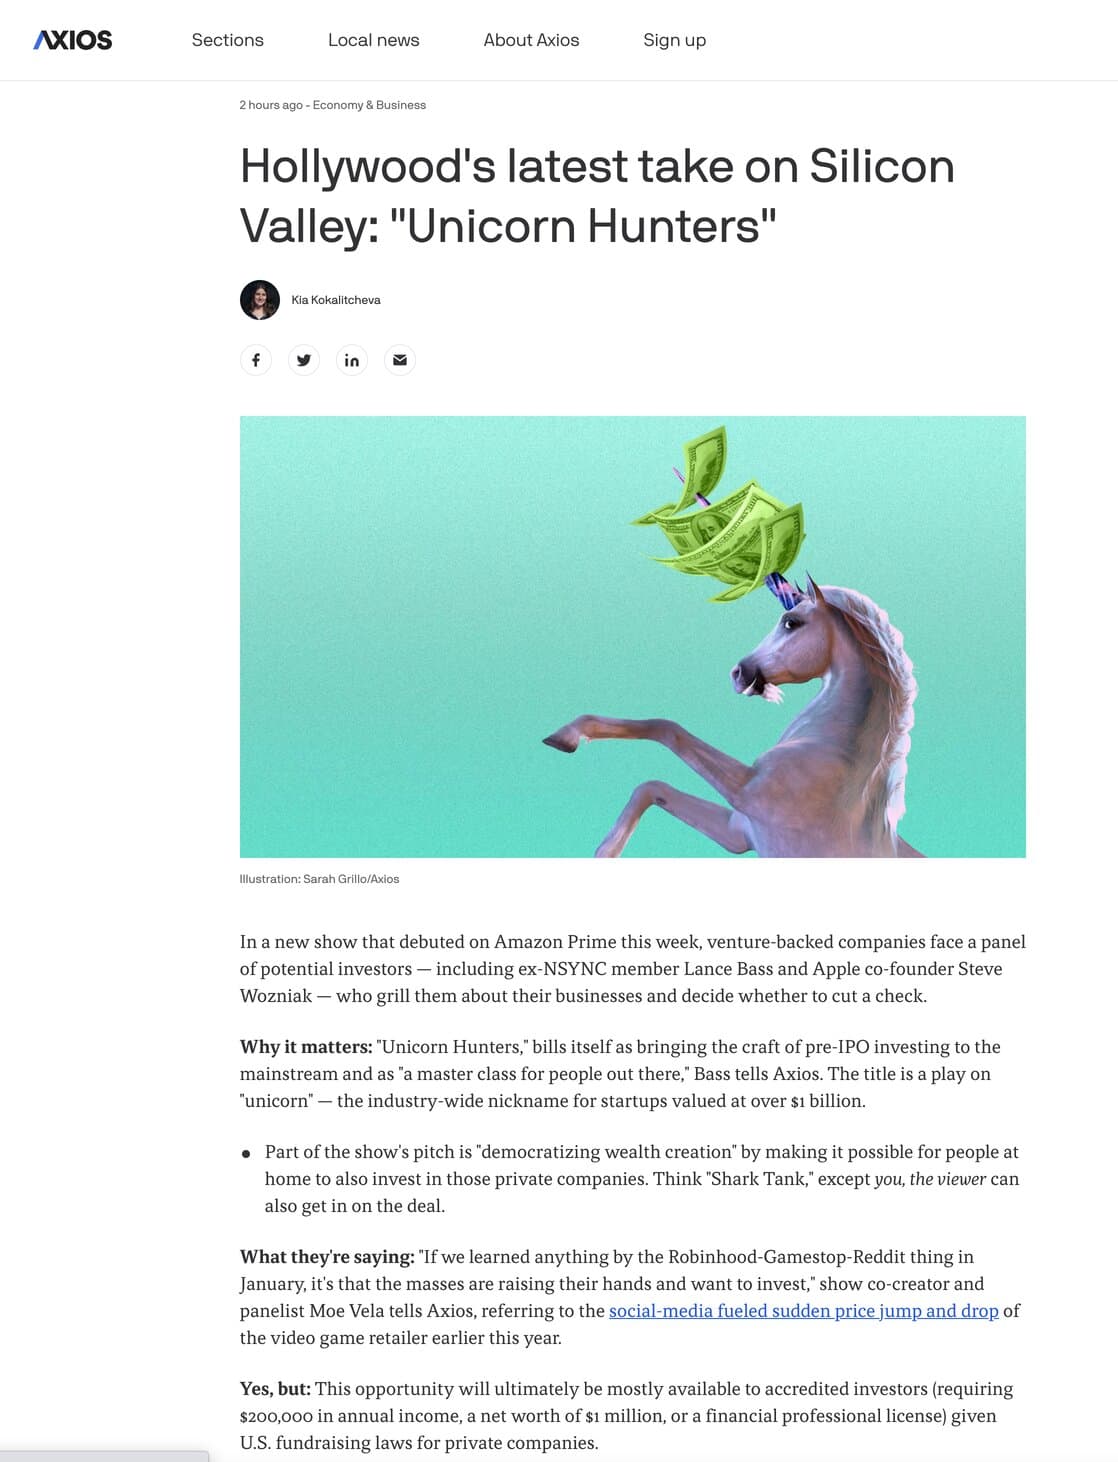 Media about Unicorn Hunters